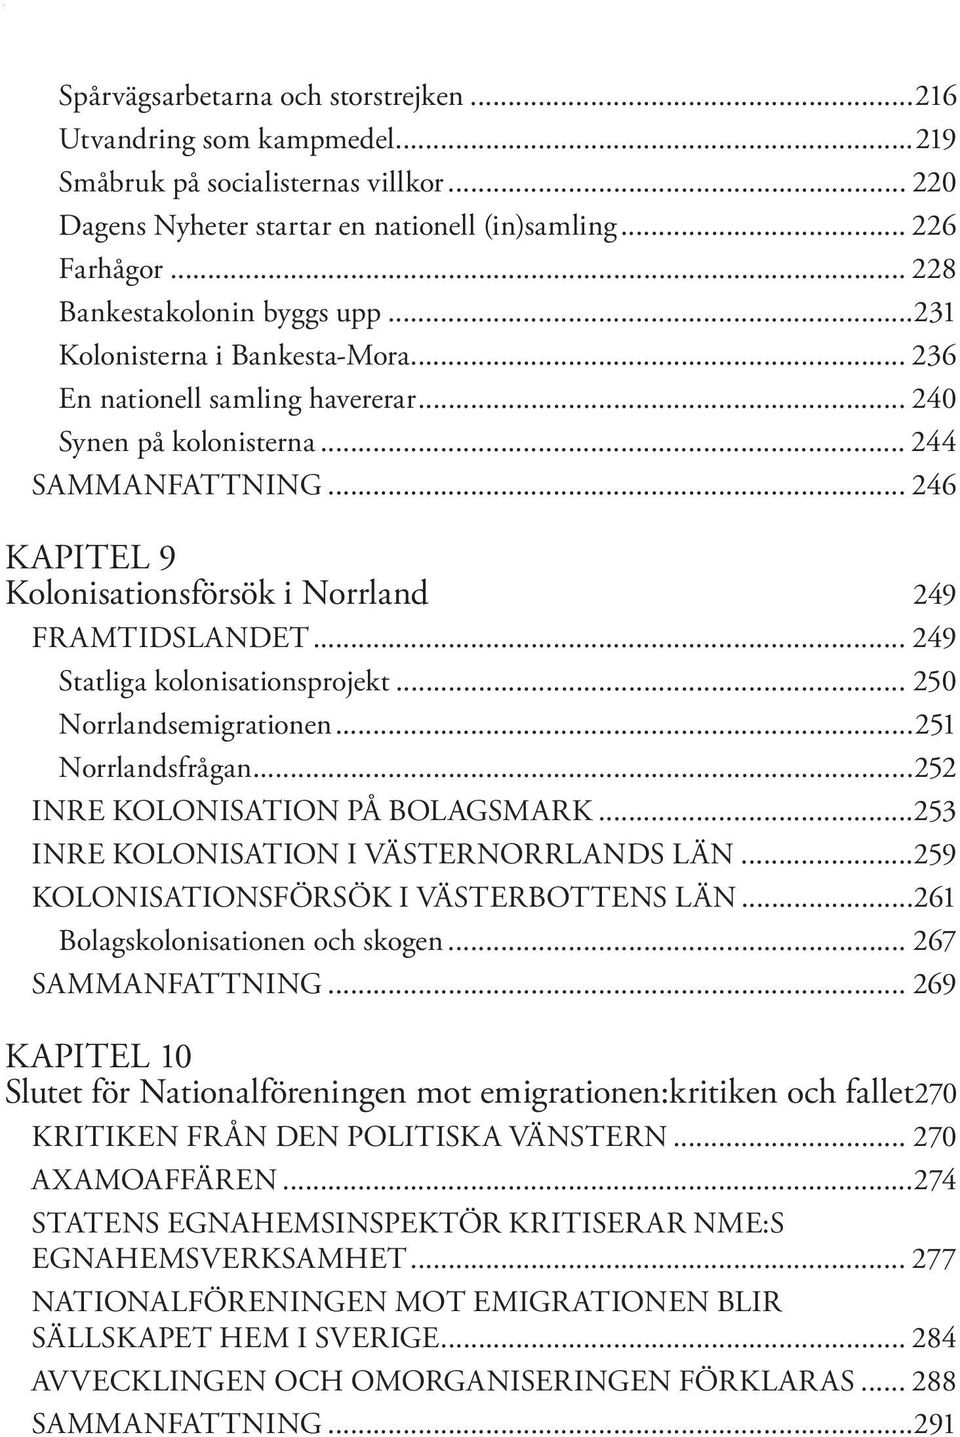 .. 246 KAPITEL 9 Kolonisationsförsök i Norrland 249 FRAMTIDSLANDET... 249 Statliga kolonisationsprojekt... 250 Norrlandsemigrationen...251 Norrlandsfrågan...252 INRE KOLONISATION PÅ BOLAGSMARK.